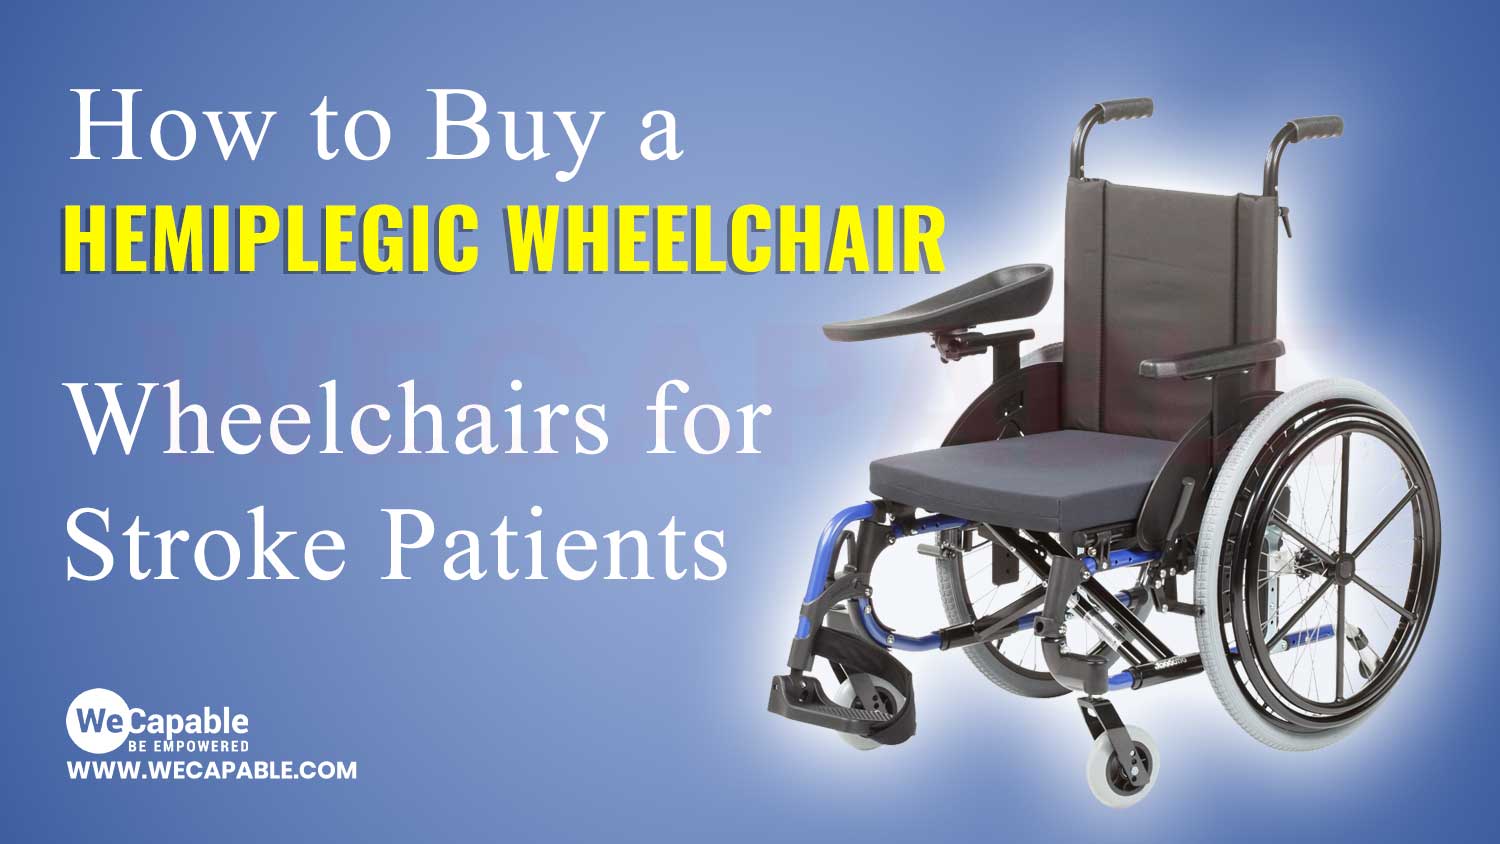 hemiplegic wheelchair for stroke patients